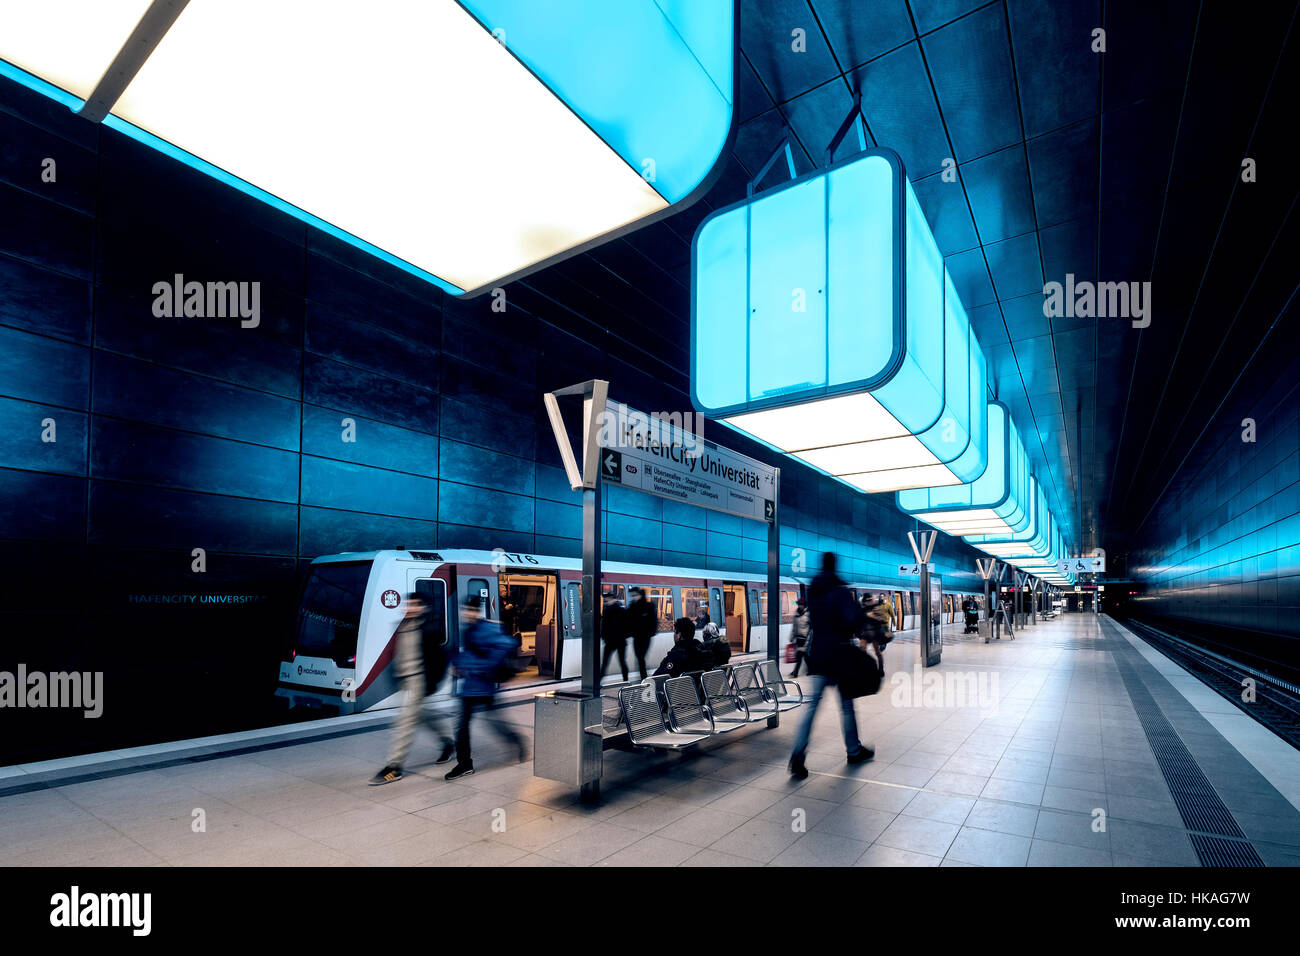 Interno di Hafencity University la stazione della metropolitana di Amburgo, Germania Foto Stock